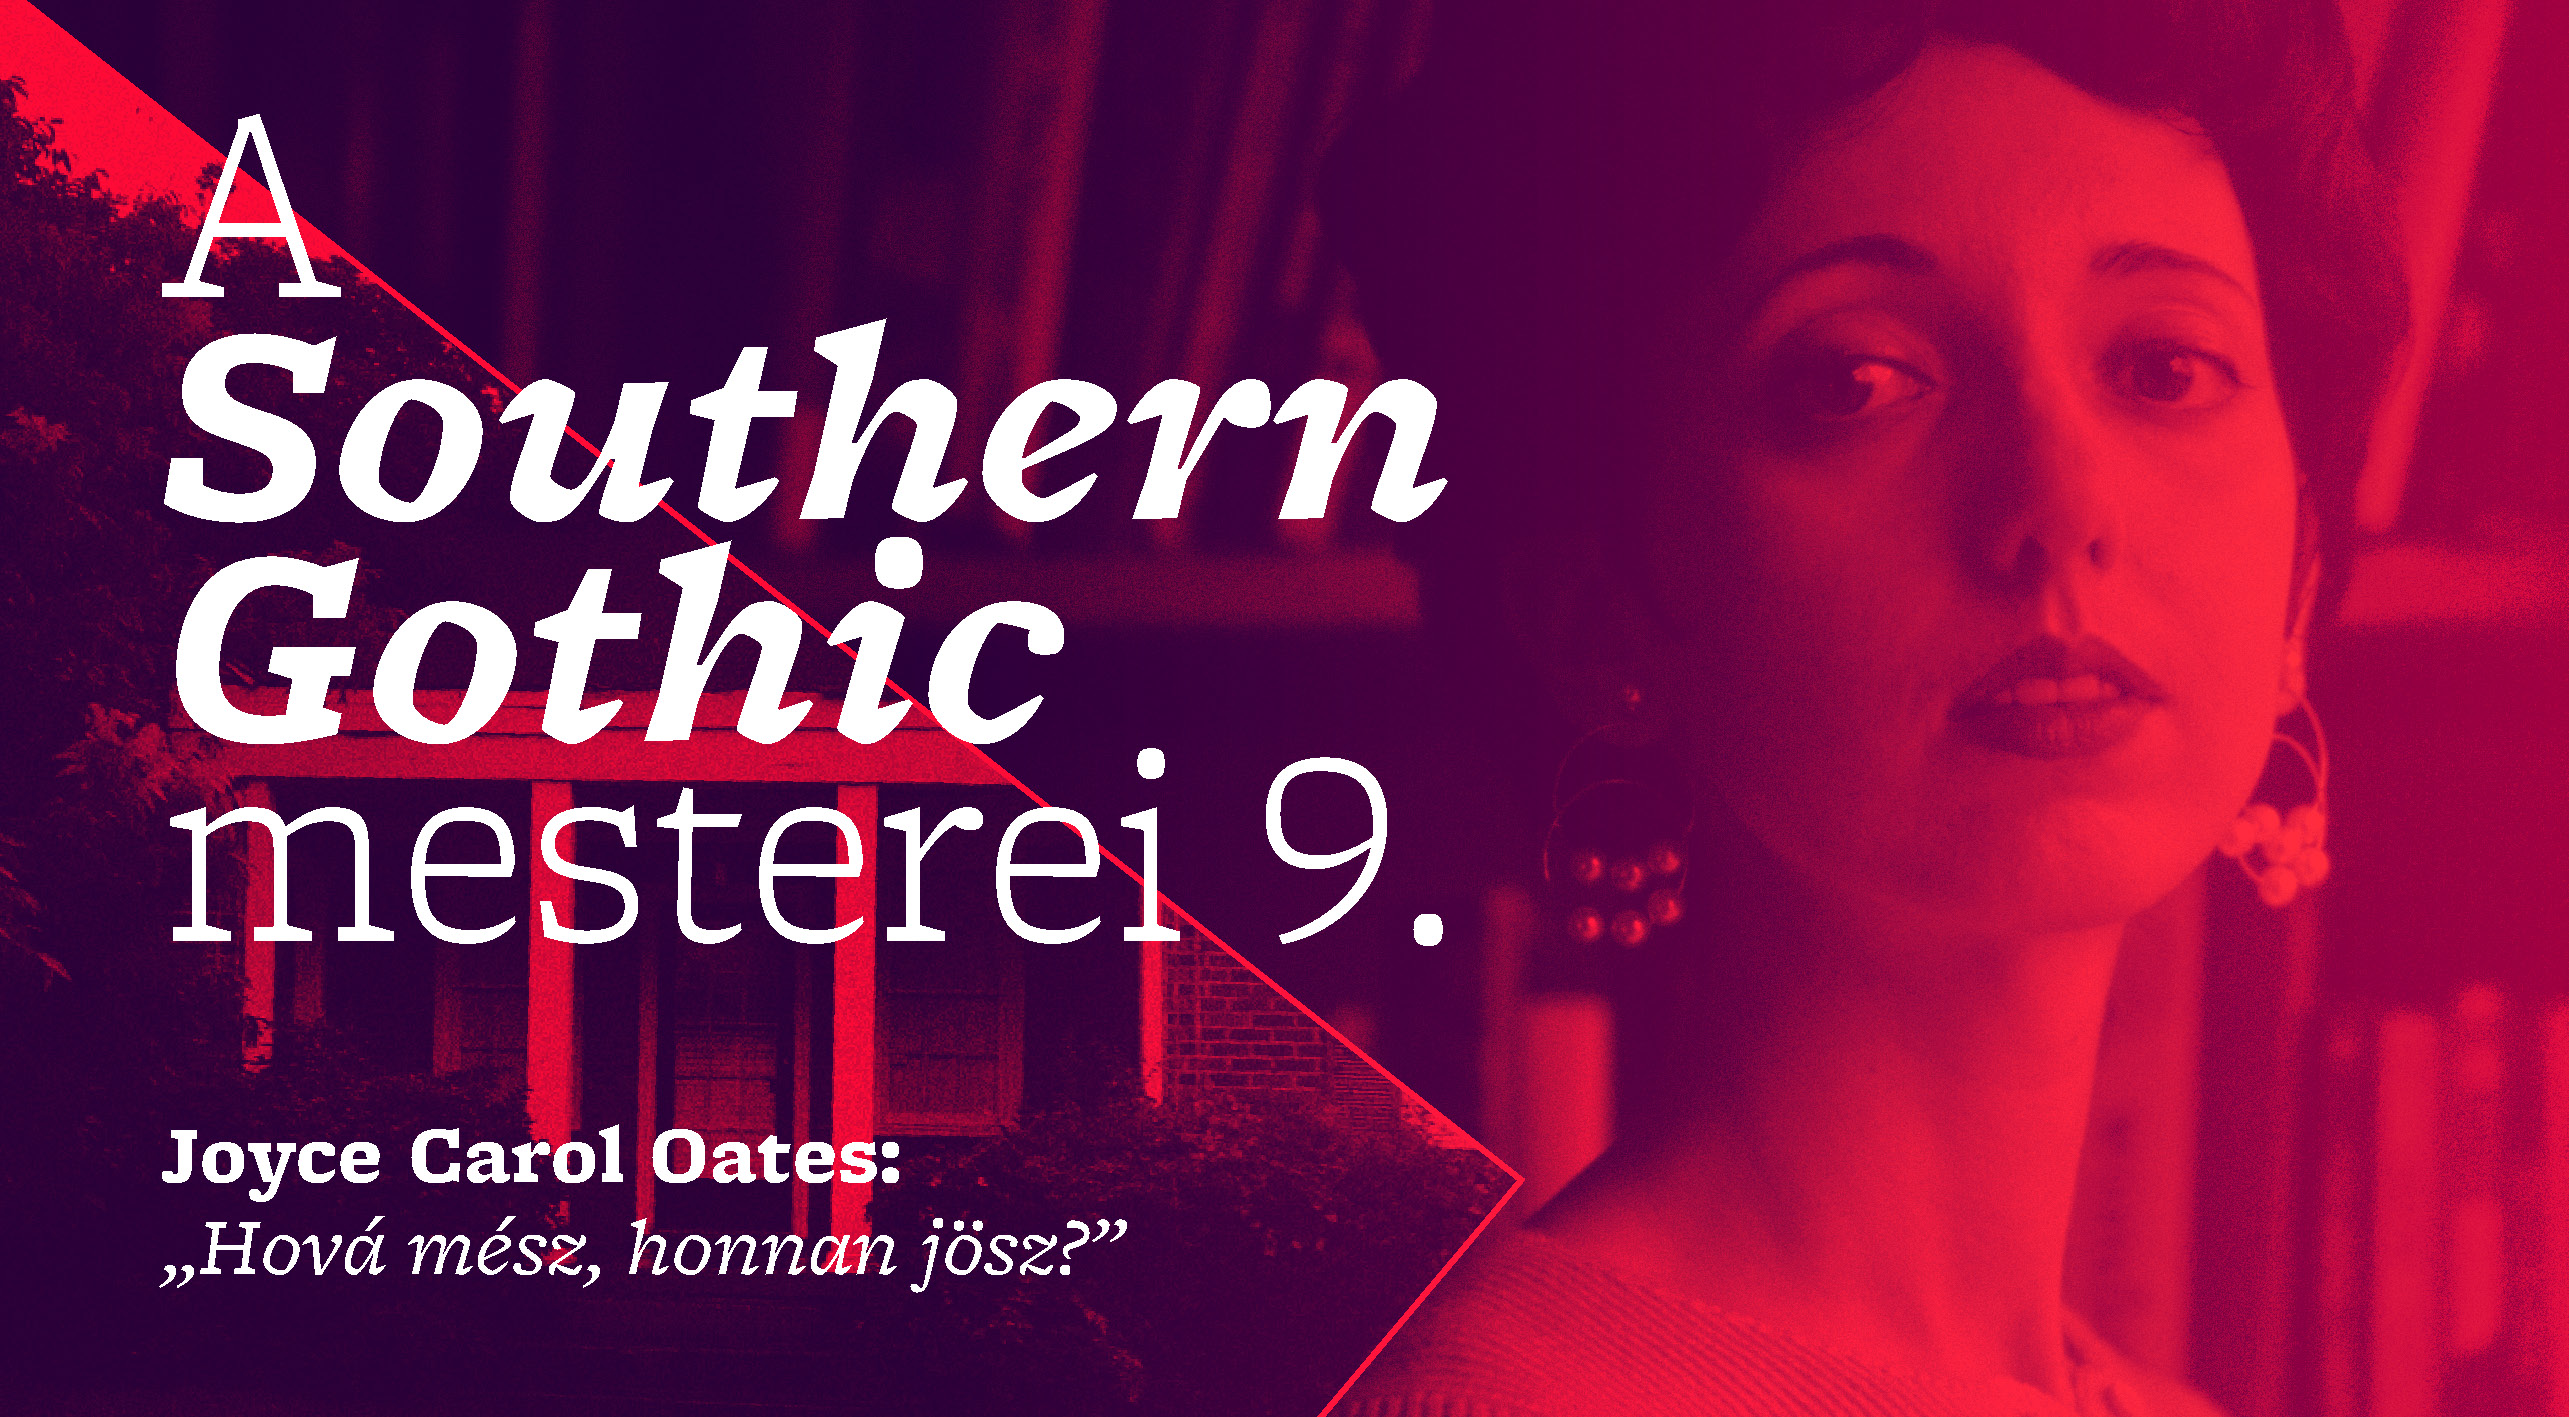 A Southern Gothic mesterei 9. (Joyce Carol Oates: Hová mész, honnan jössz?)